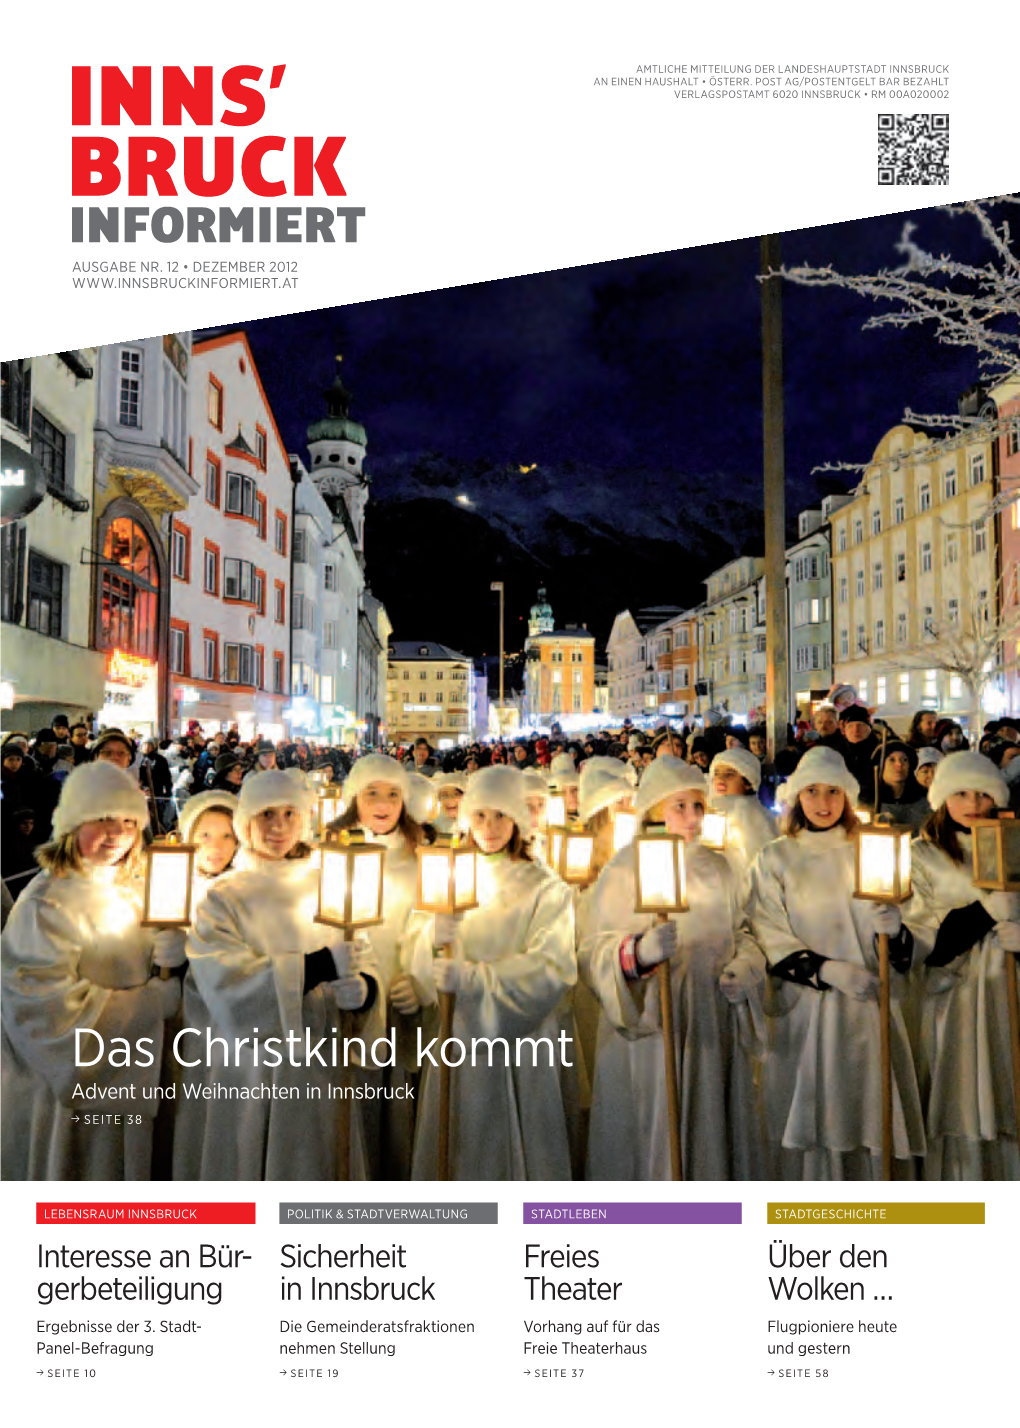 Das Christkind Kommt Advent Und Weihnachten in Innsbruck Seite 38